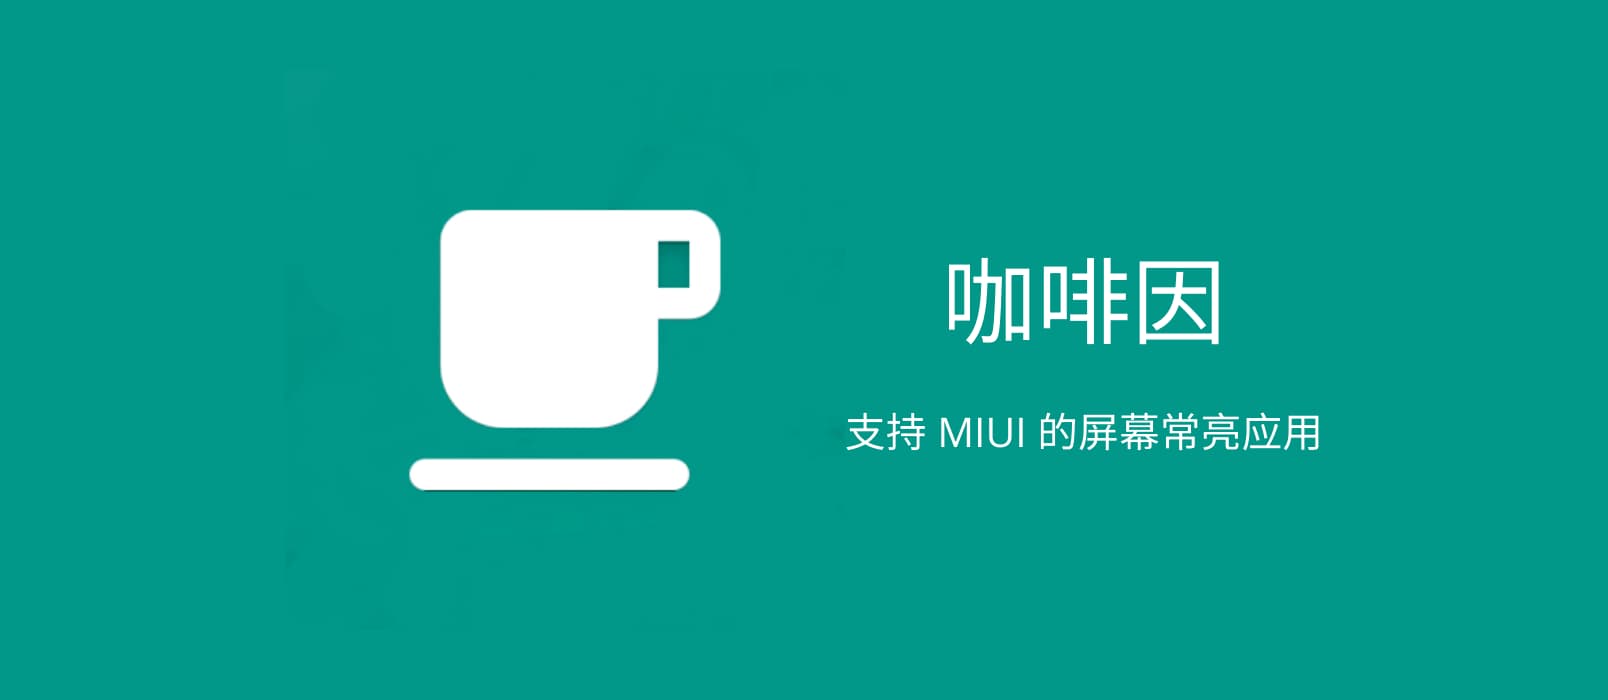 咖啡因 - 保持 Android 屏幕常亮，支持 MIUI 系统 1